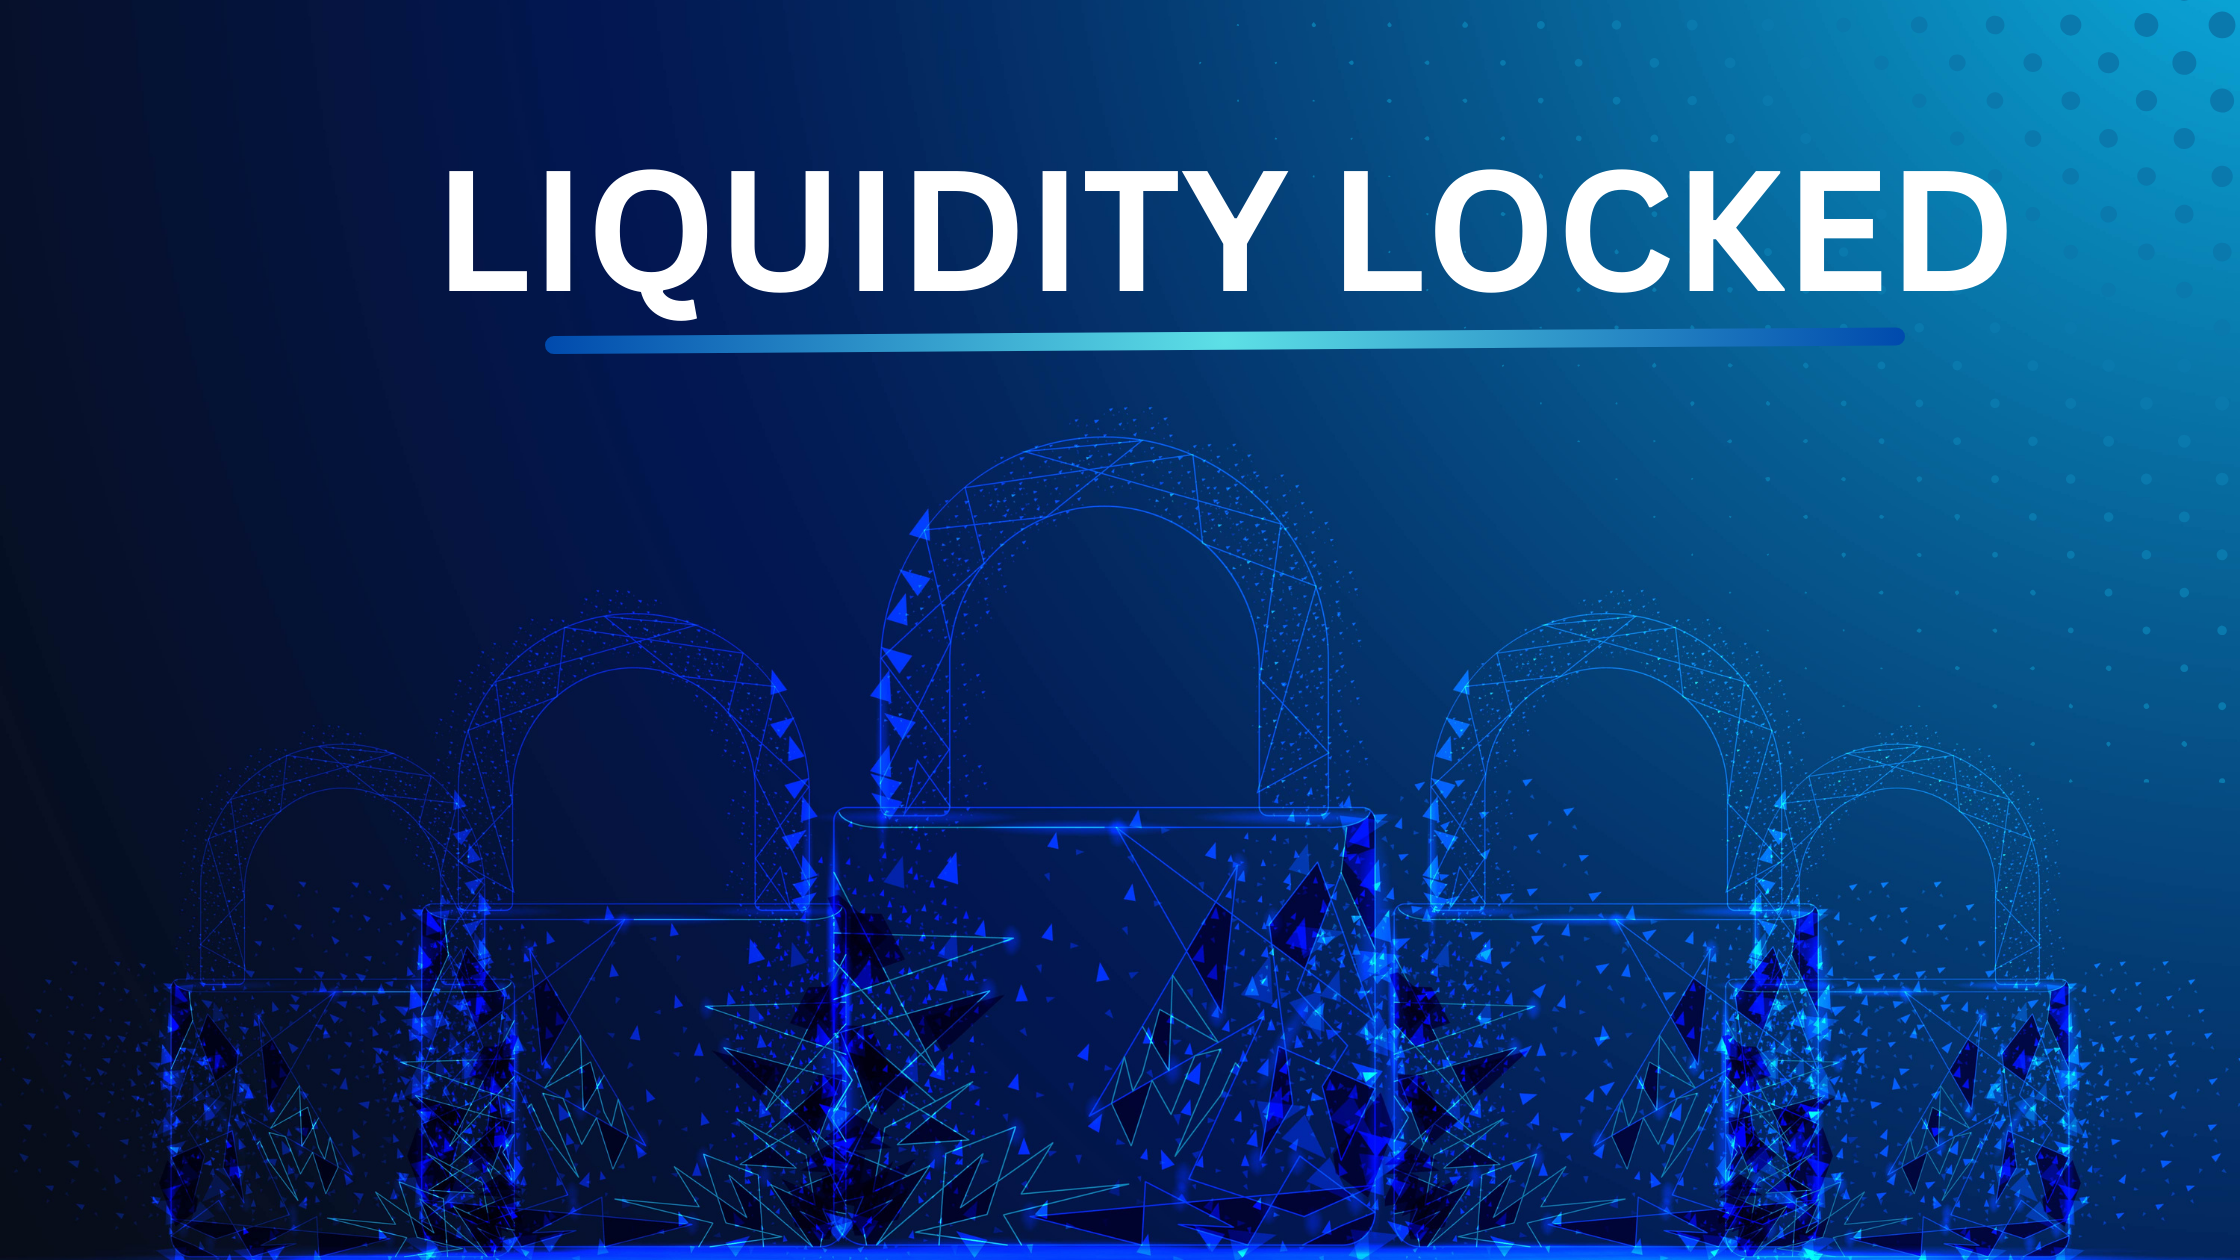 Mi az a likviditás zárolva a kriptovalutában? Jó-e a likviditás zárolása?